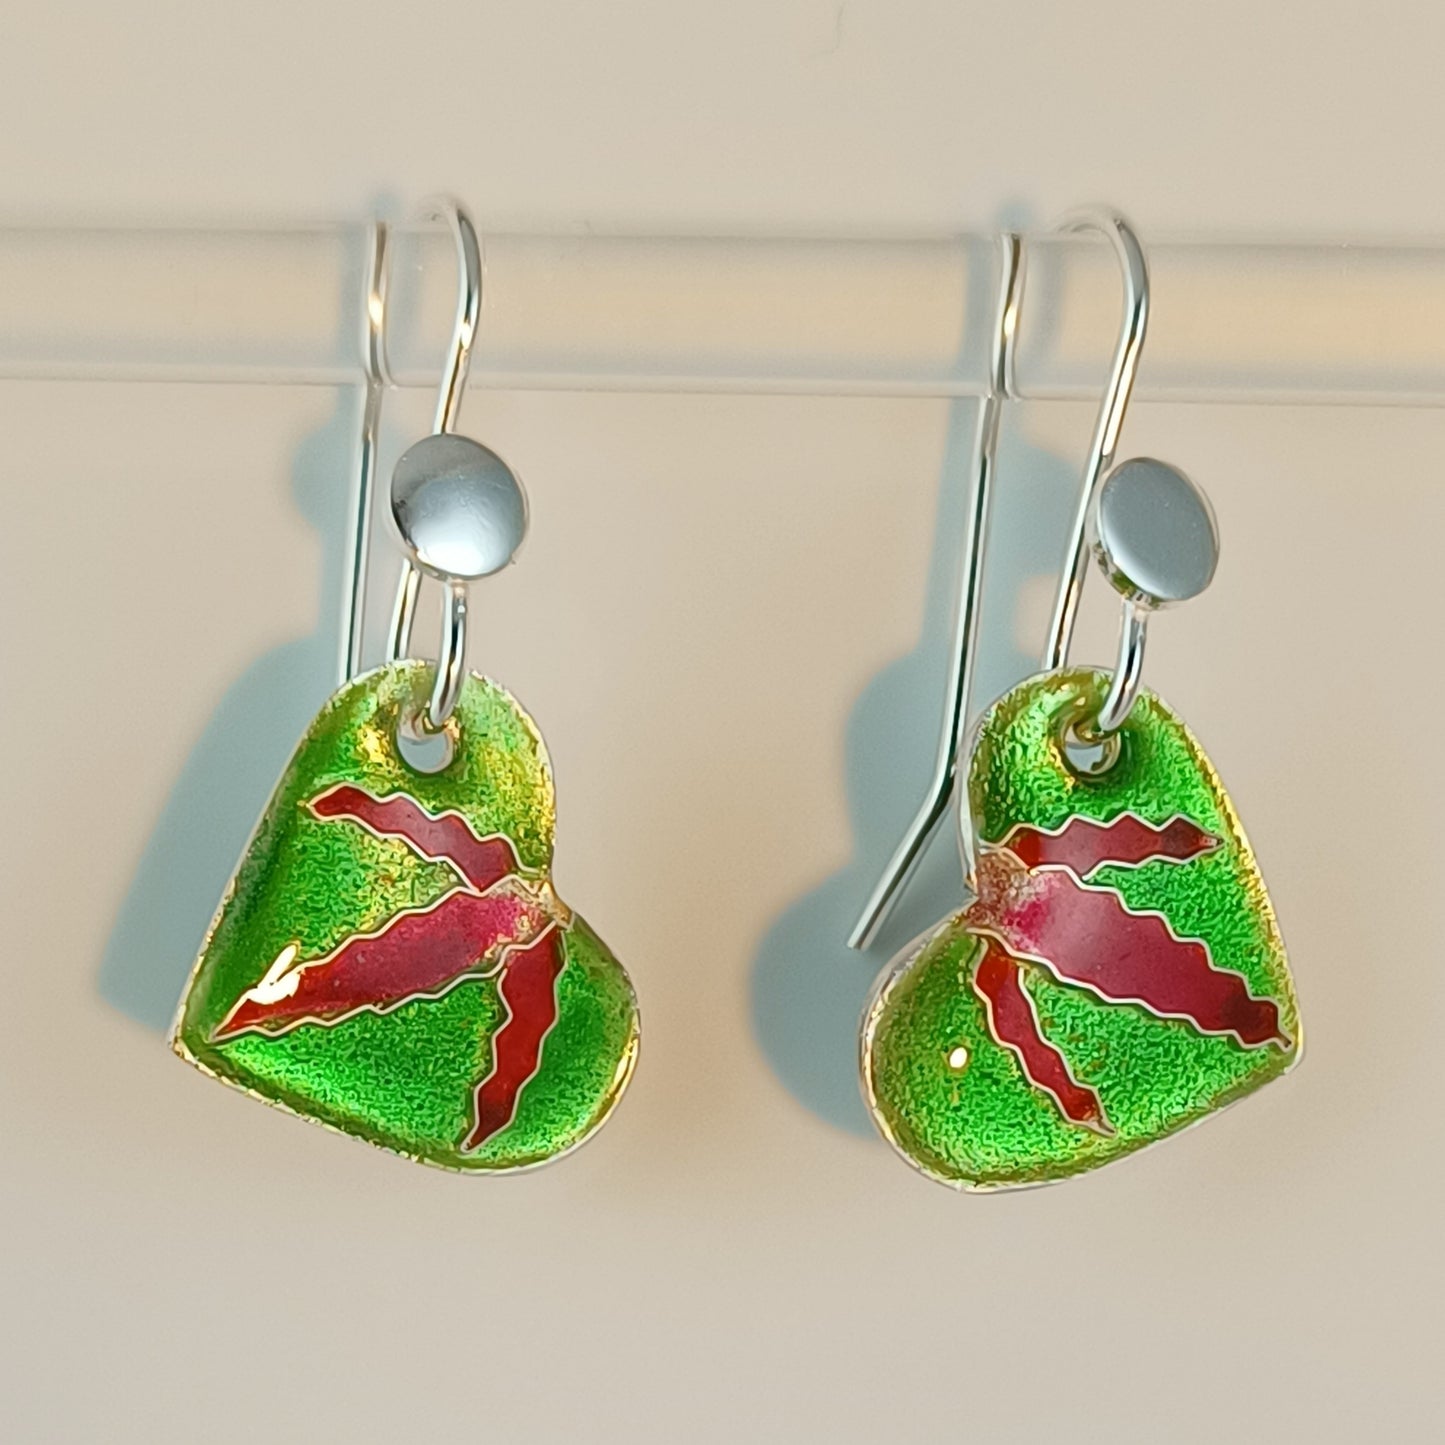 Green Heart Earrings Cloisonne Enamels on Fine Silver (999), Handmade in Australia